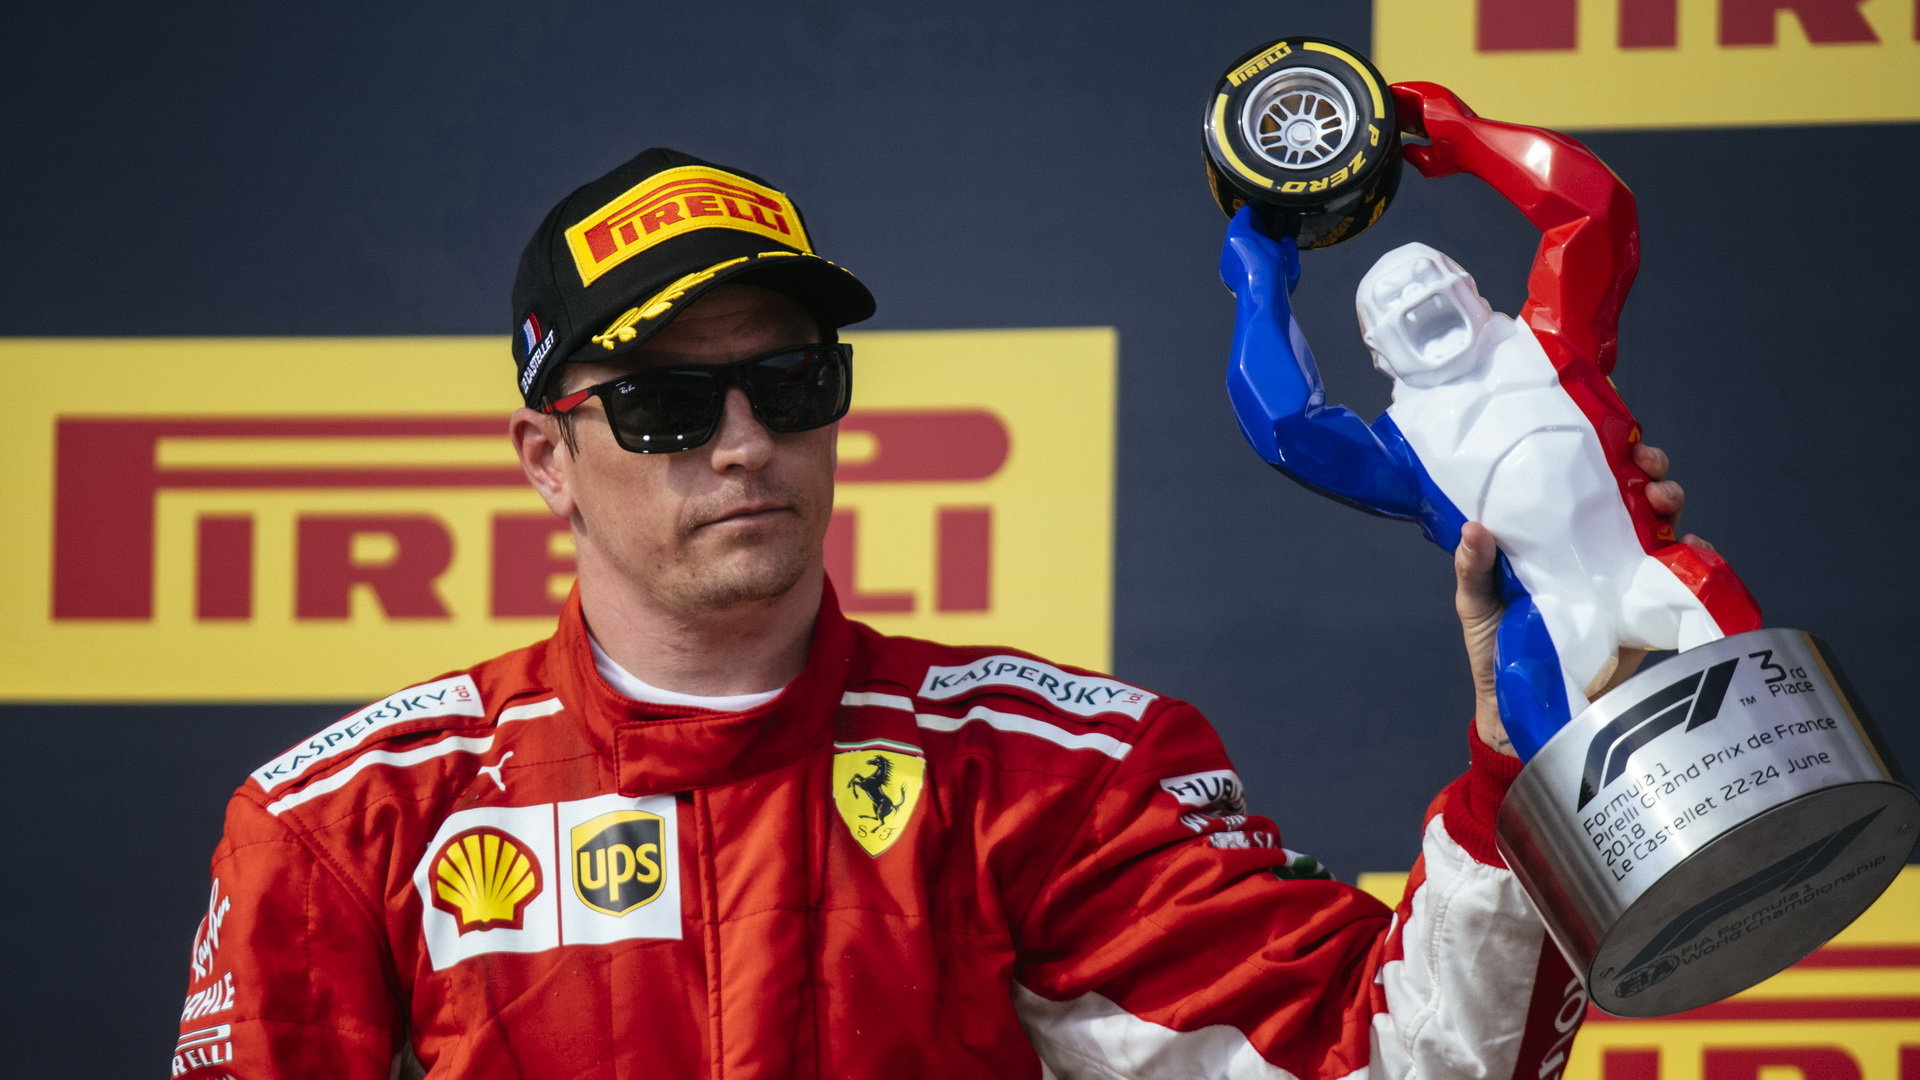 Kimi Räikkönen se svou trofejí po závodě ve Francii